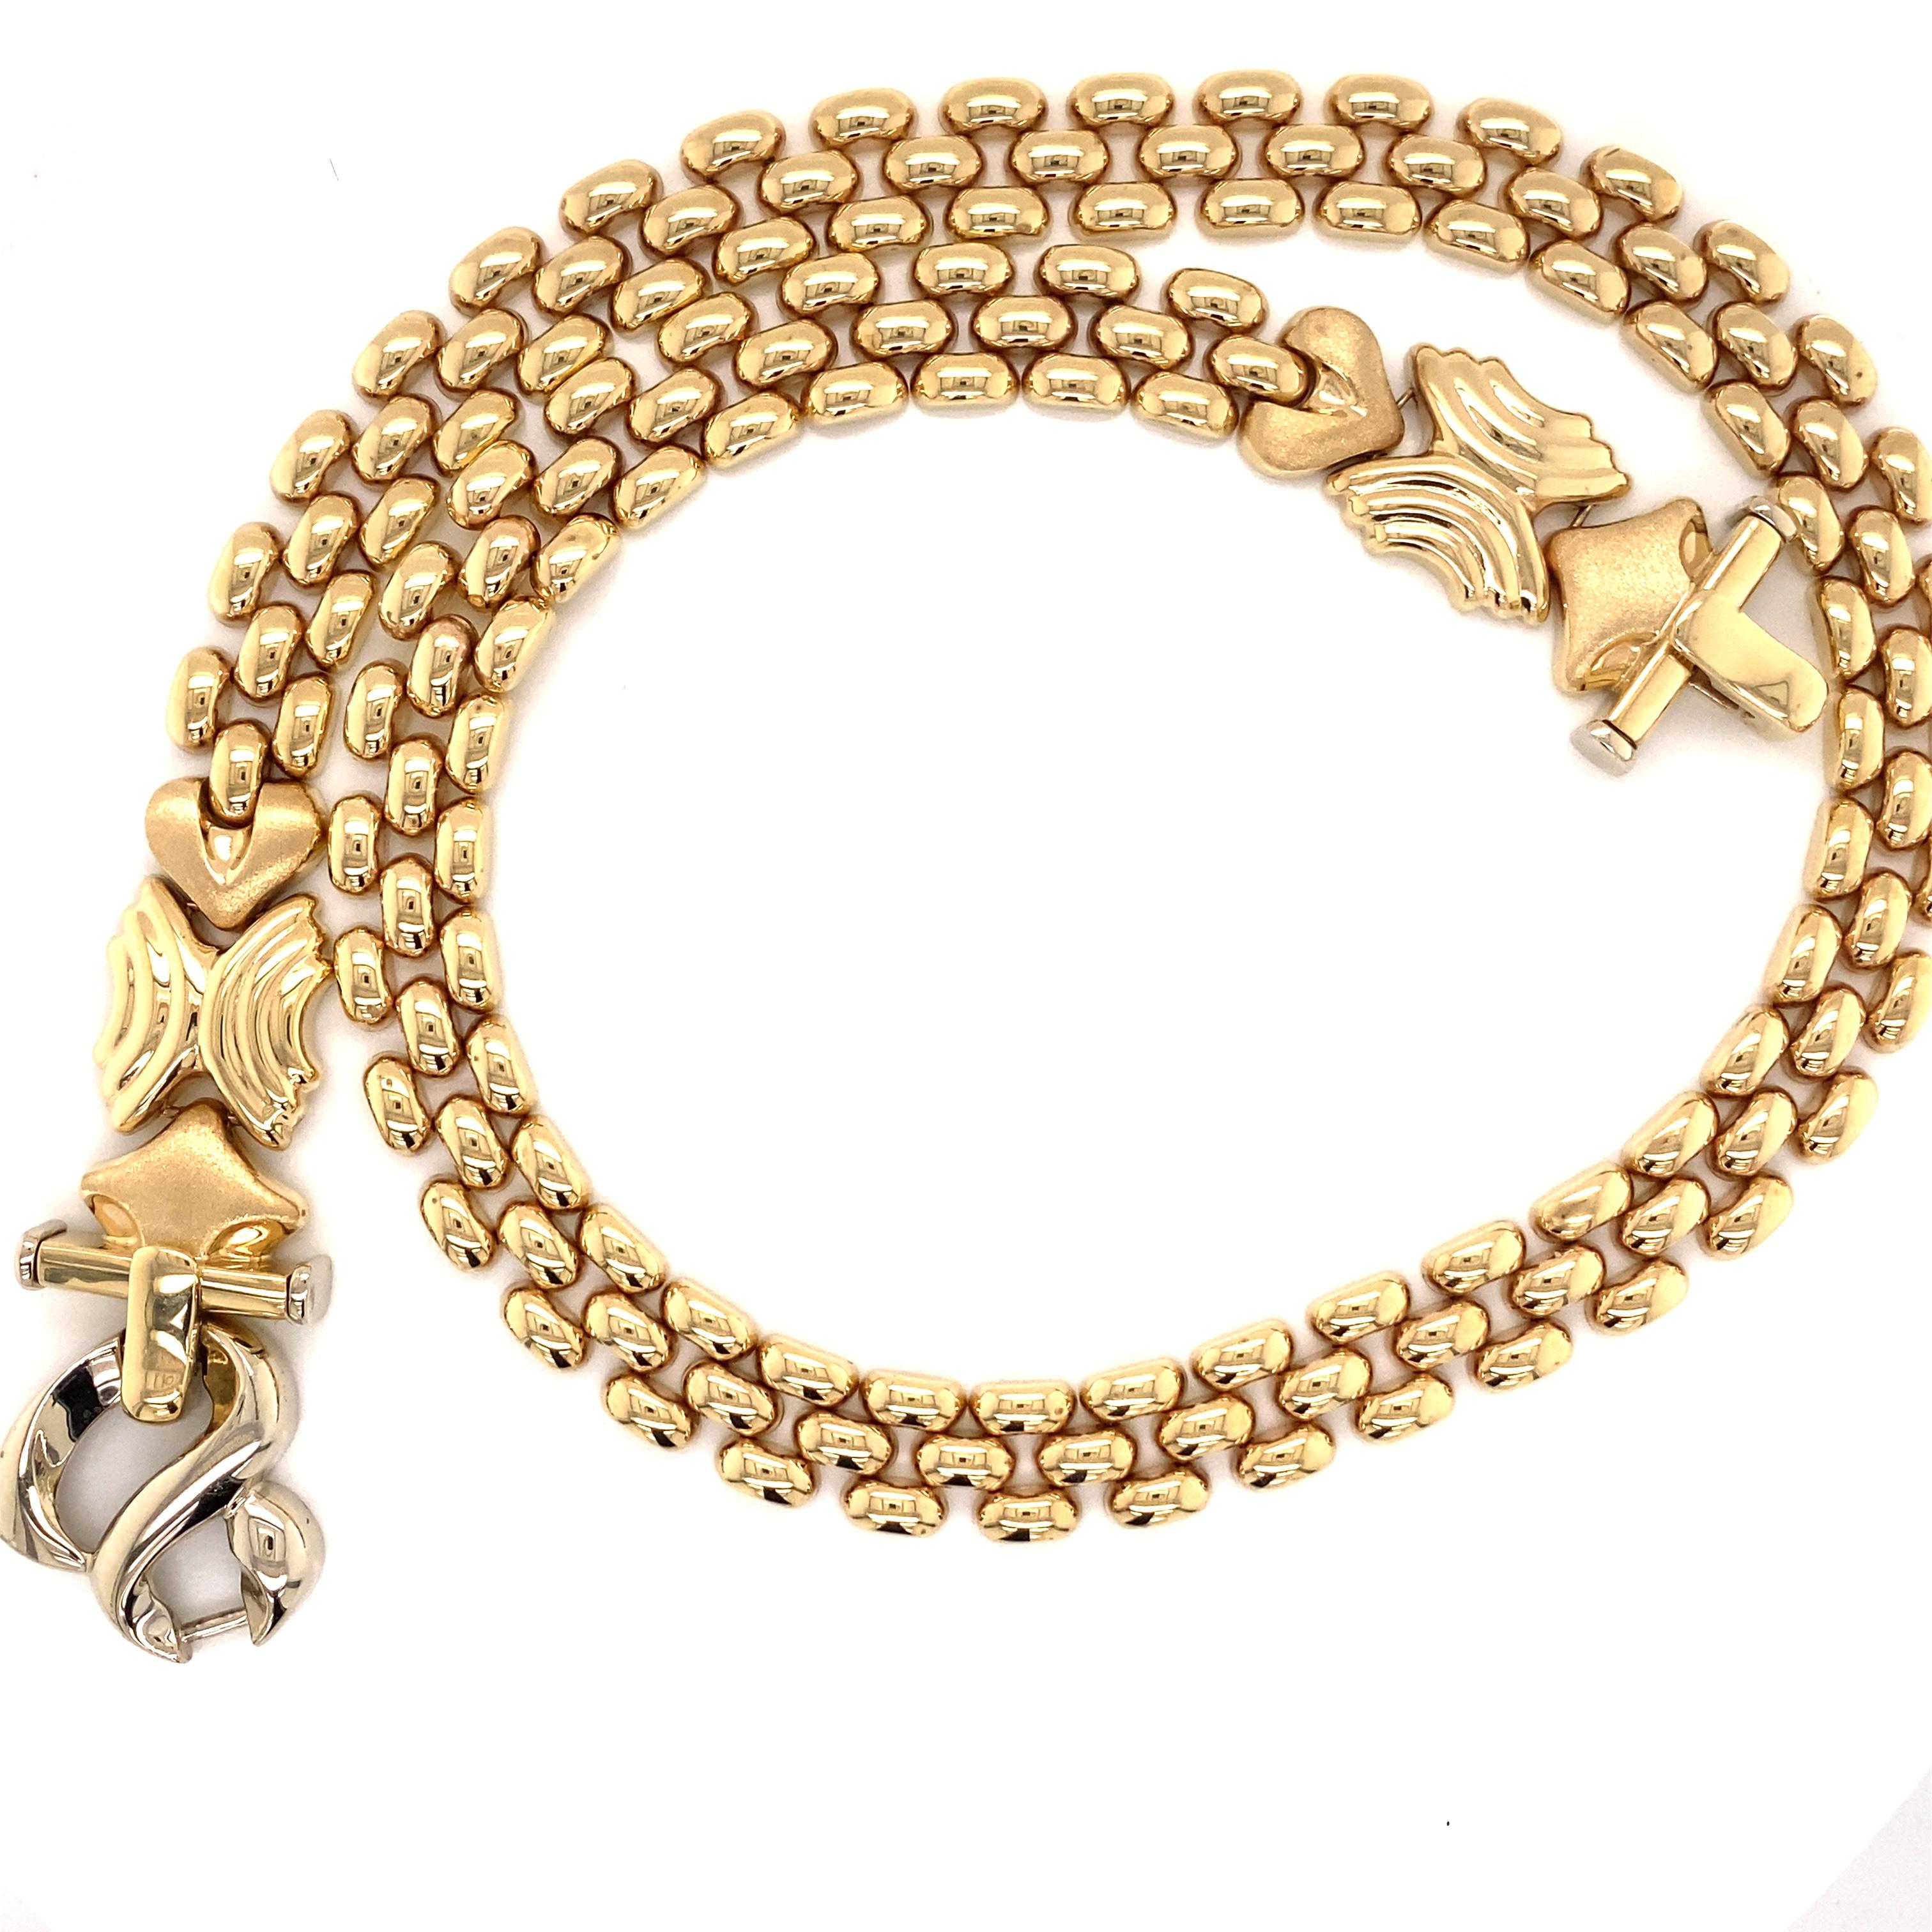 Vintage 1990's 14K Yellow Gold Italian Panther Link Necklace - Die italienische Halskette verfügt über einen Statement-Verschluss, der sowohl auf der Vorder- als auch auf der Rückseite getragen werden kann. Das 3-reihige Pantherglied ist 10 mm